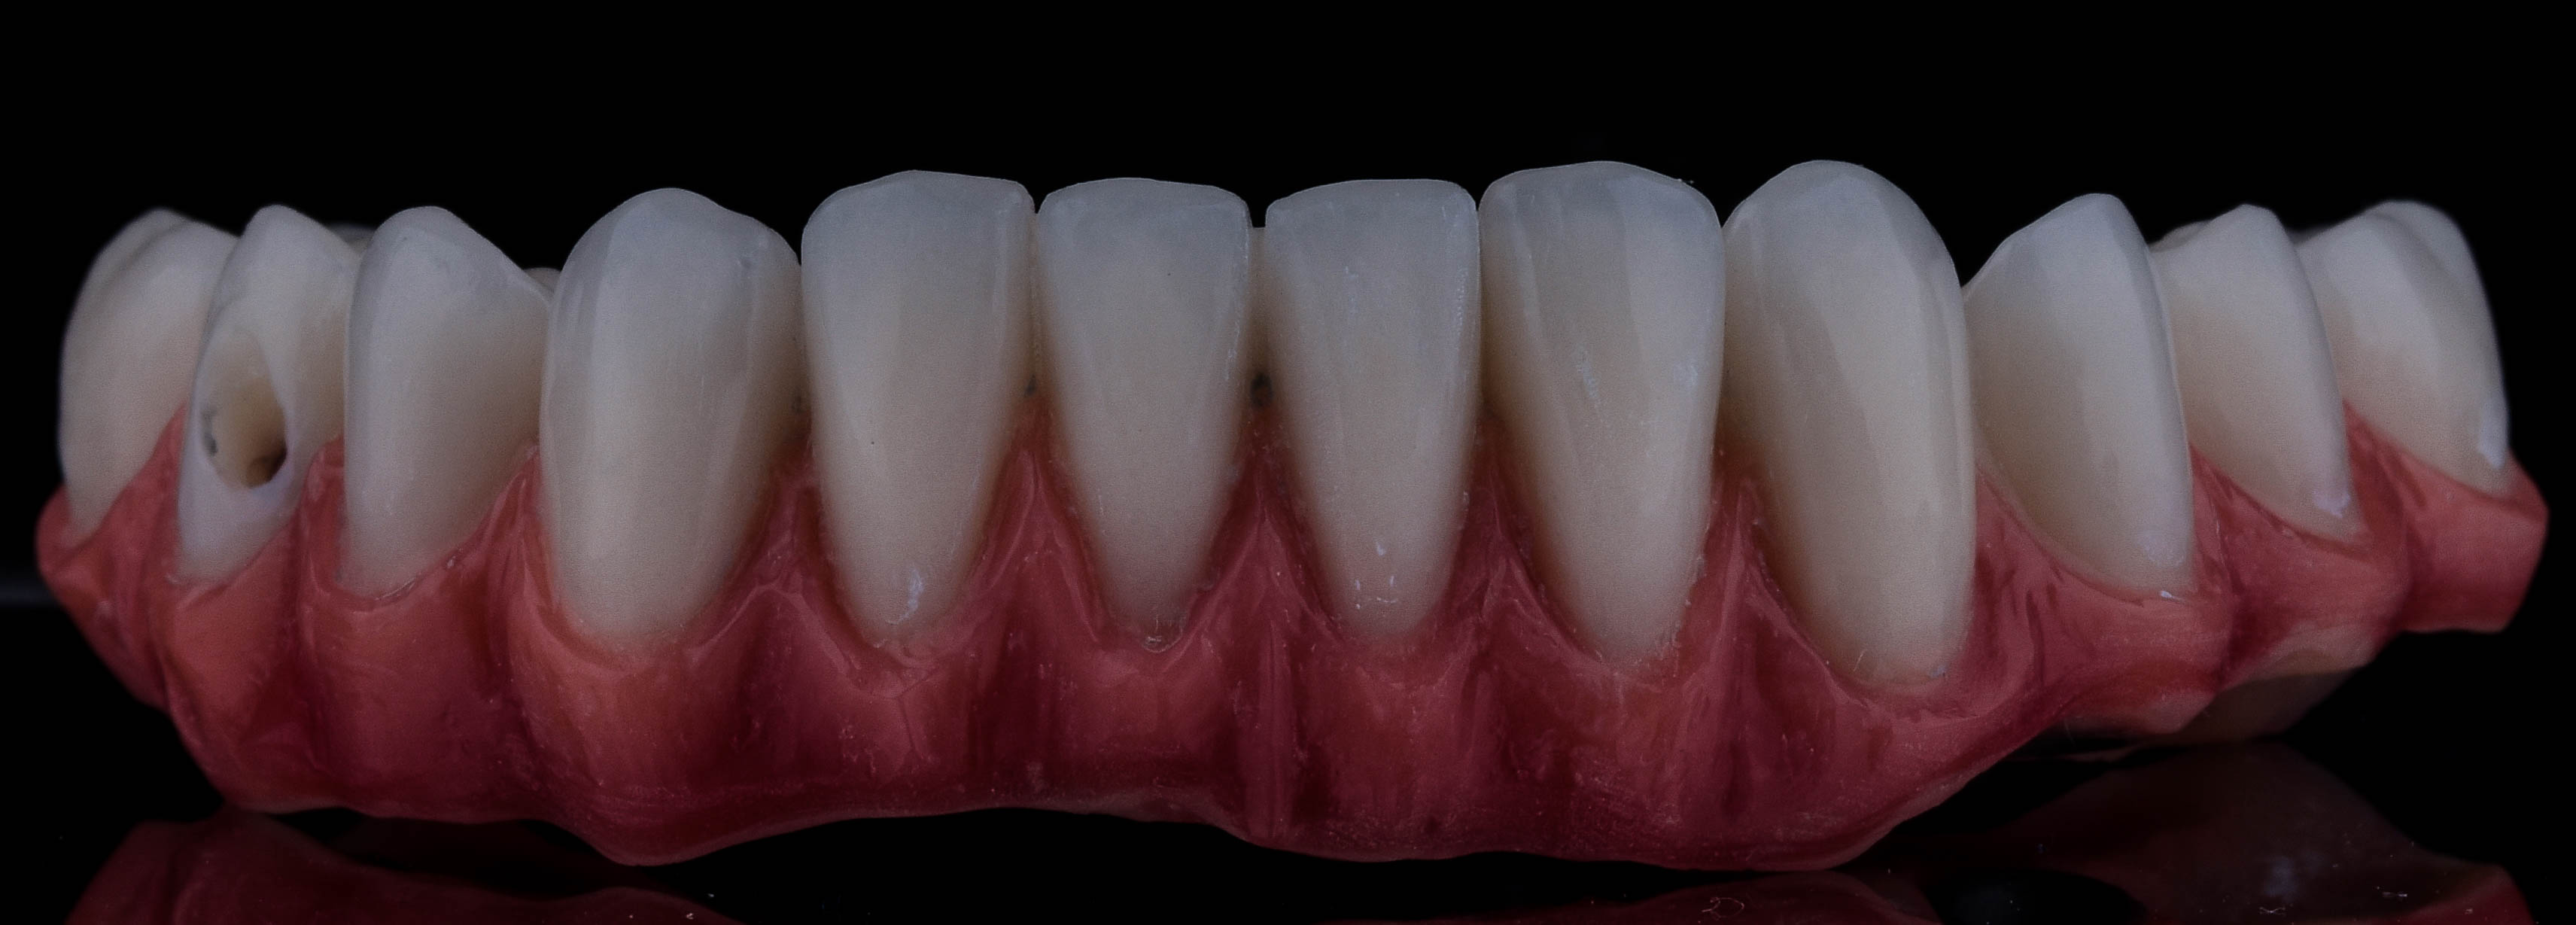 صورة توضح كيفية يتم البدء فى تركيب الأسنان بشكل كامل داخل الفم